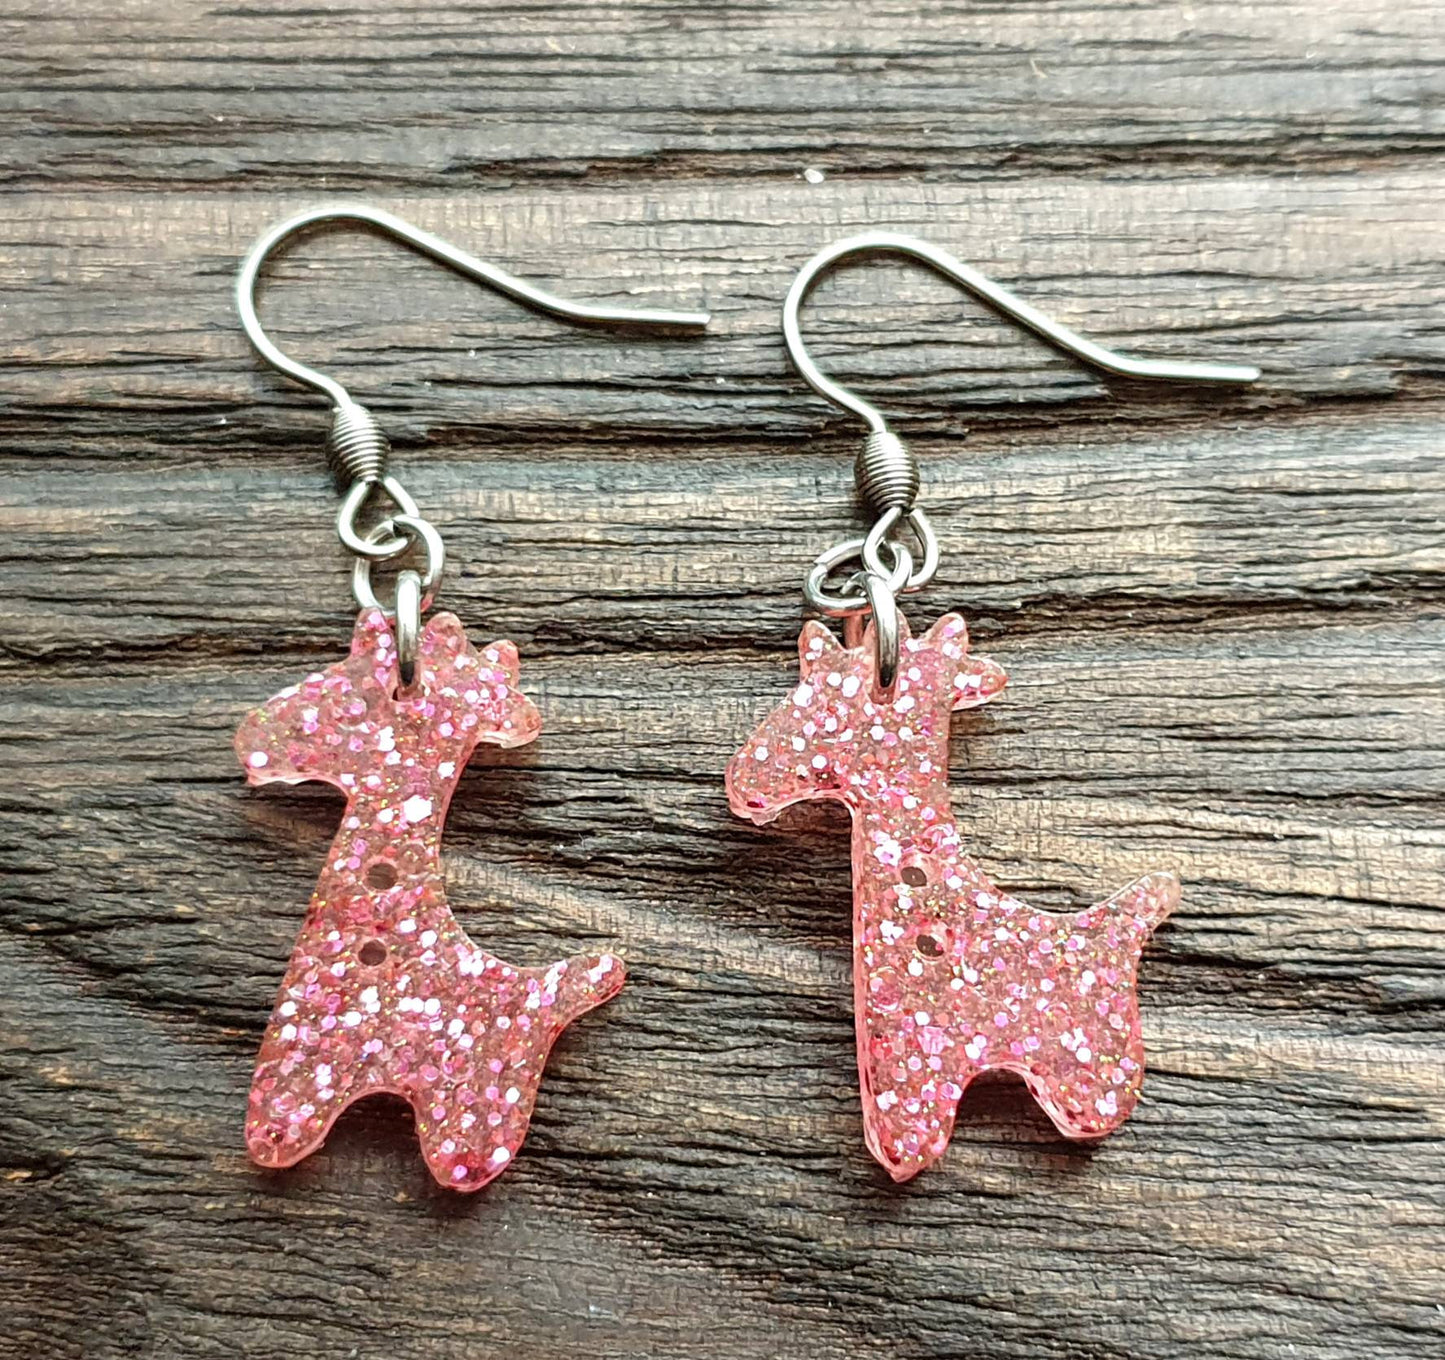 Giraffe Dangle Earrings, Pink Glitter Resin Stainless Steel Earrings.